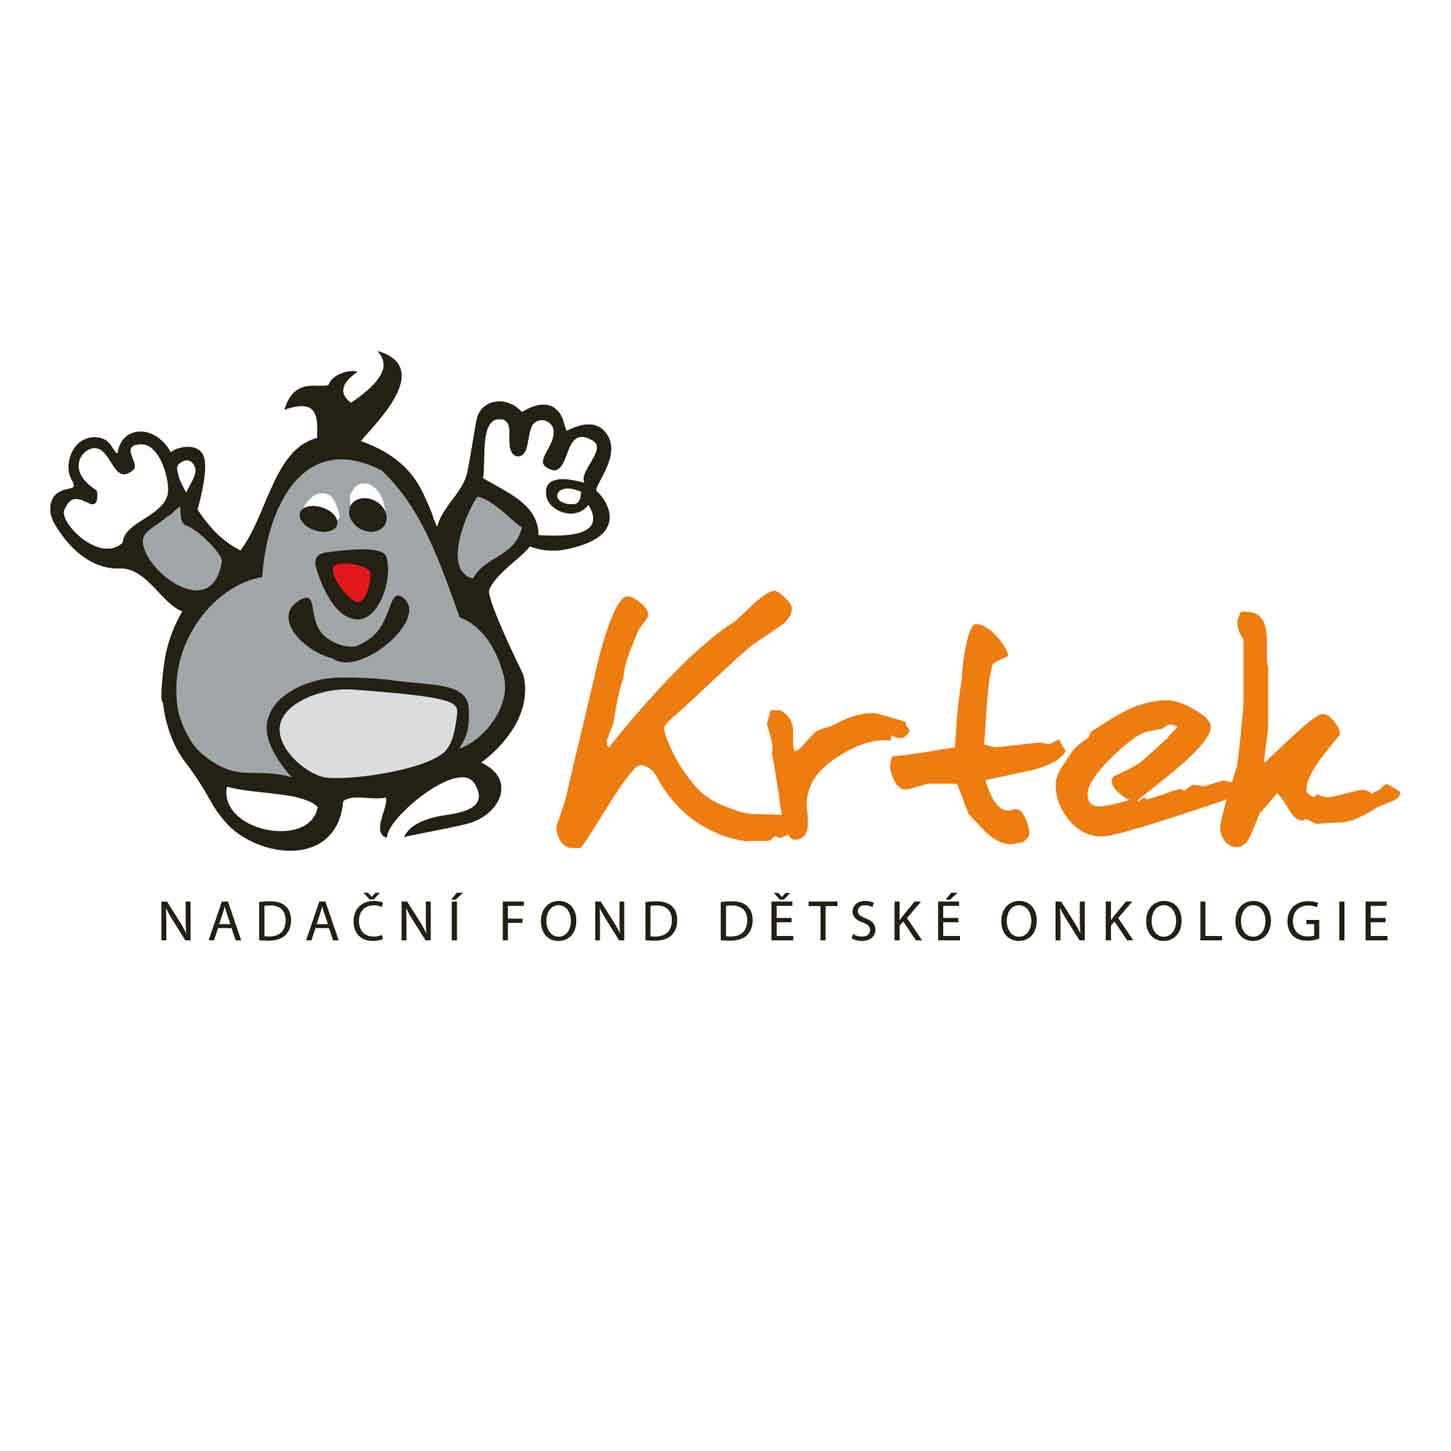 Nadačný fond dětské onkologie Krtek